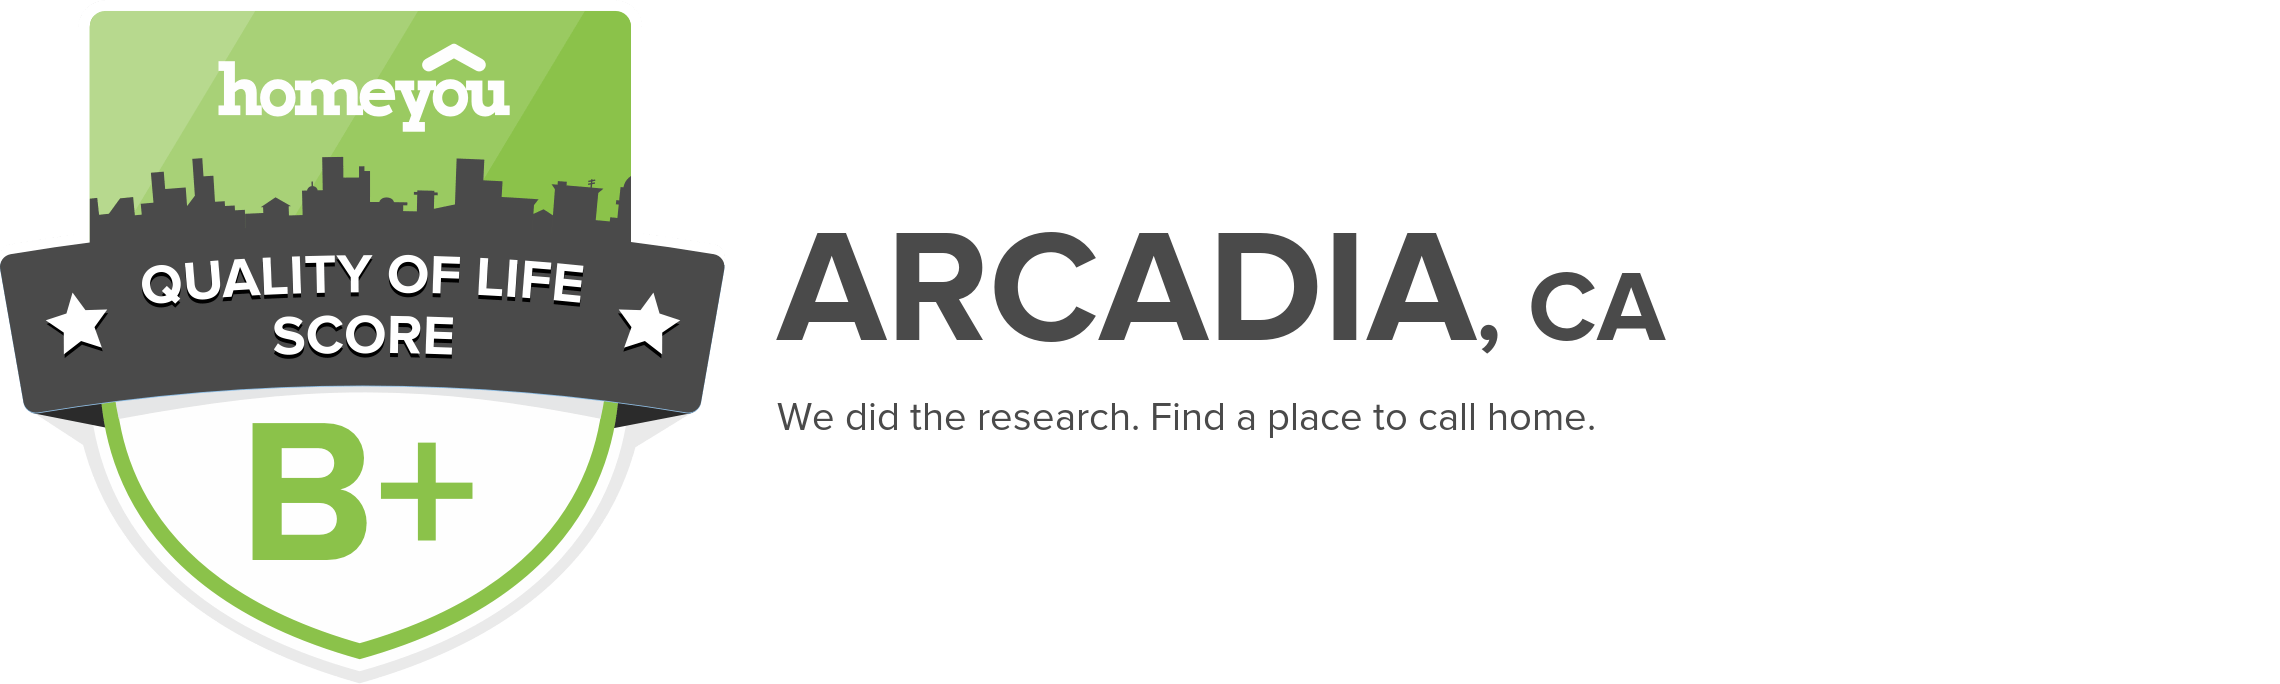 Arcadia, CA